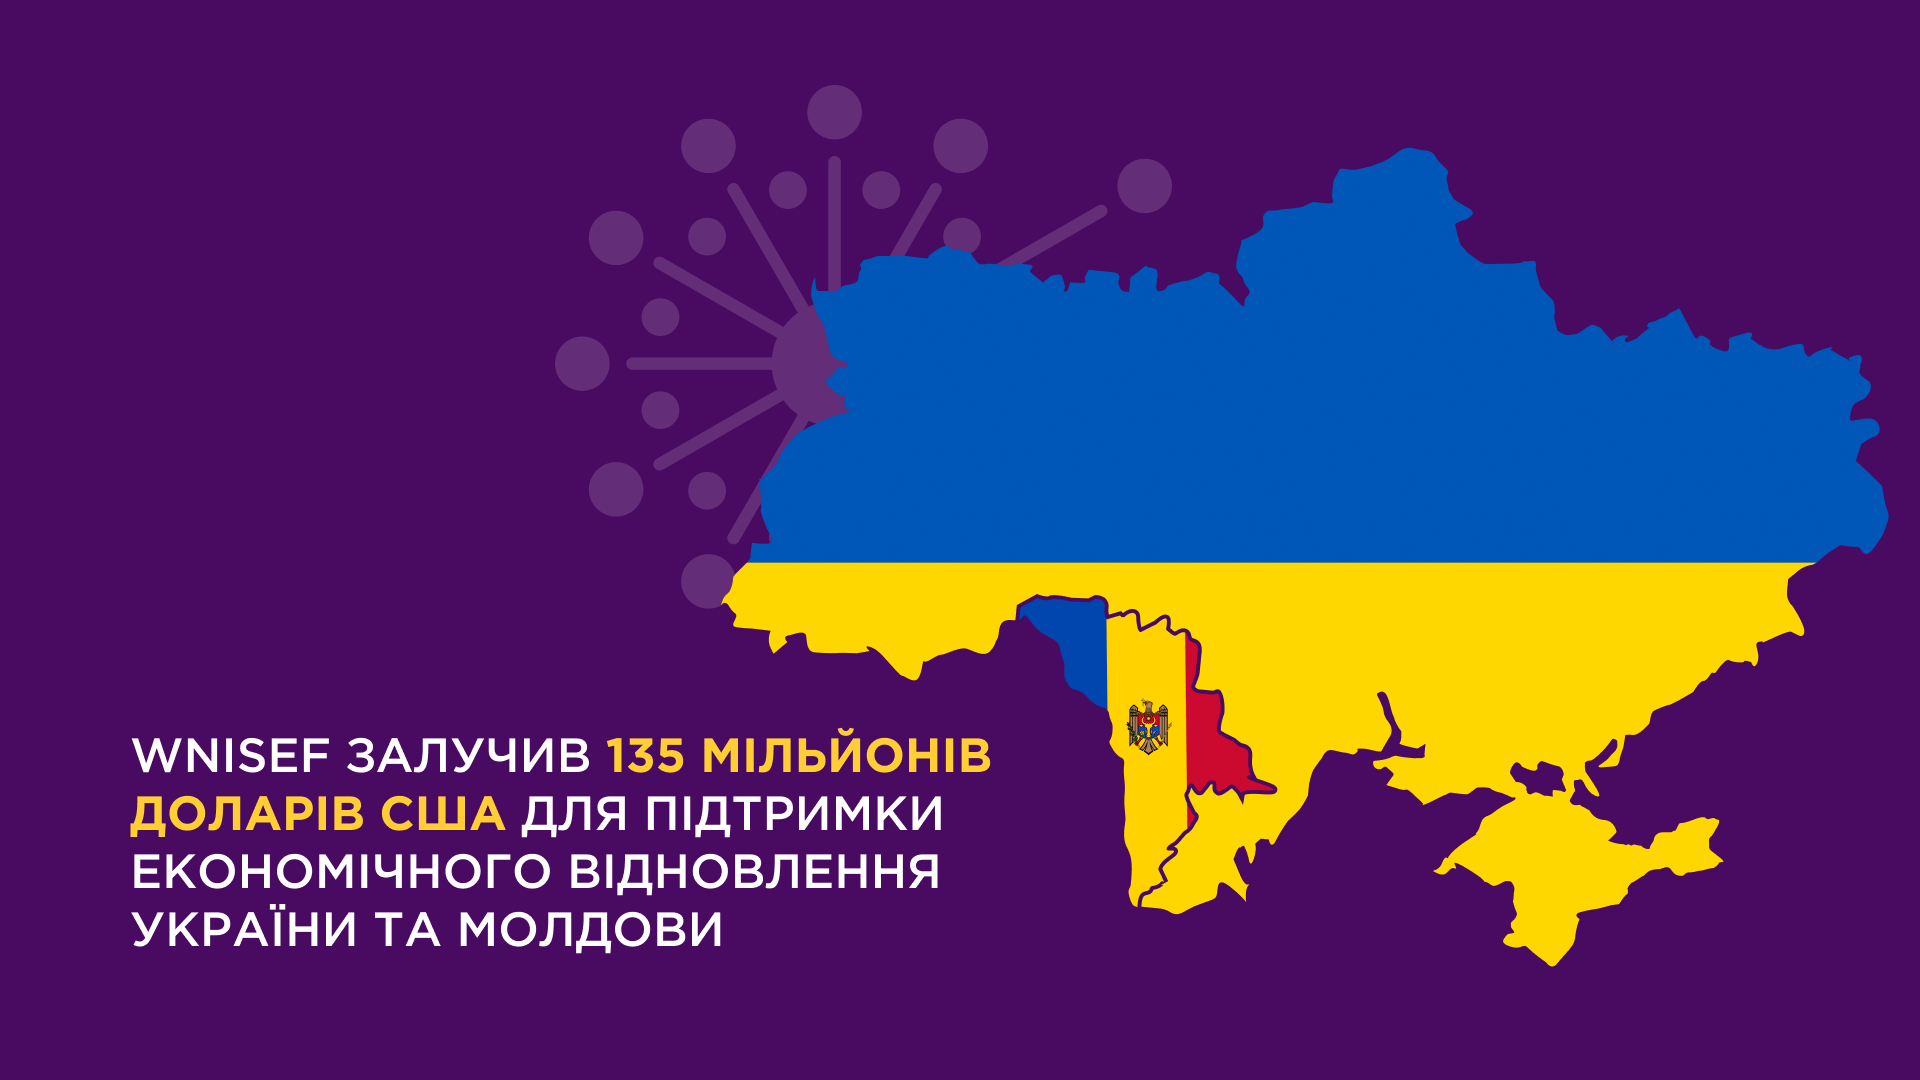 Western NIS Enterprise Fund залучив 135 млн. доларів США для підтримки економічного відновлення України та Молдови image